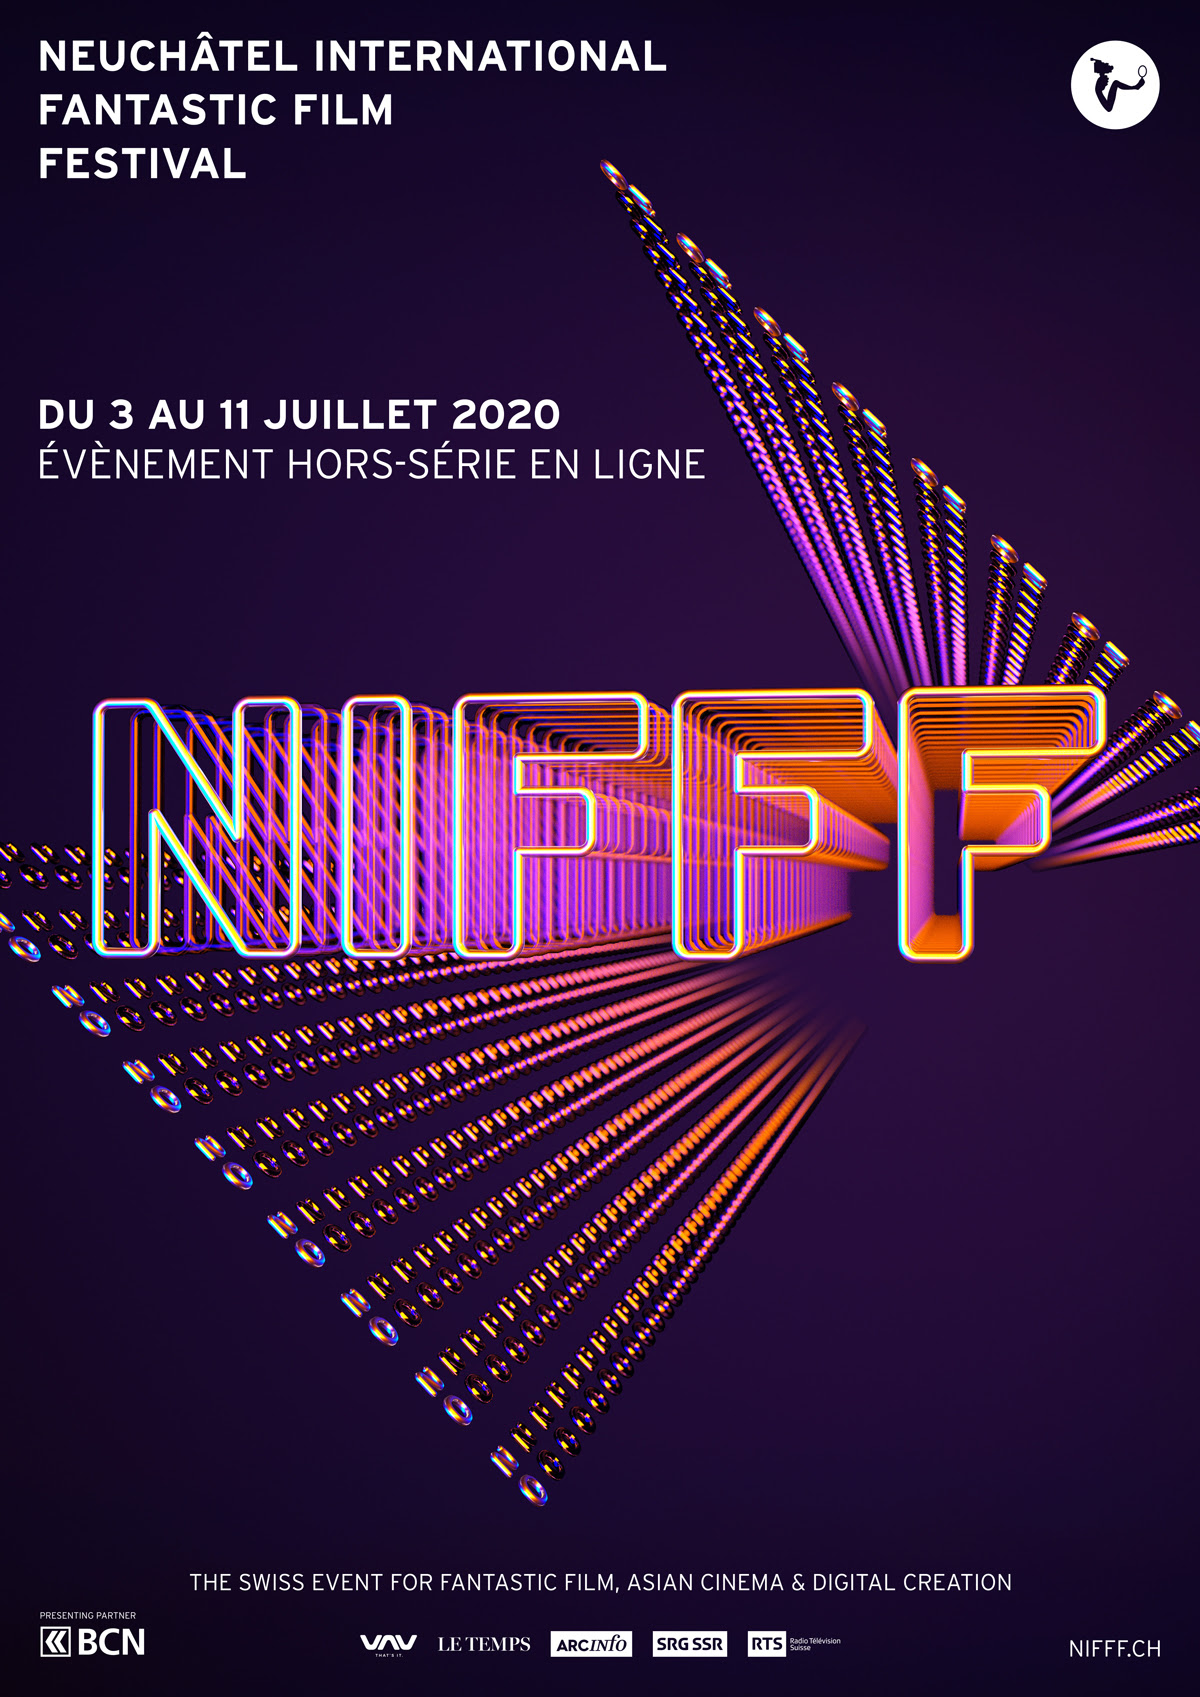 Le NIFFF 2020 reporté à 2021 : Un événement hors-série préfigurera la 20e édition